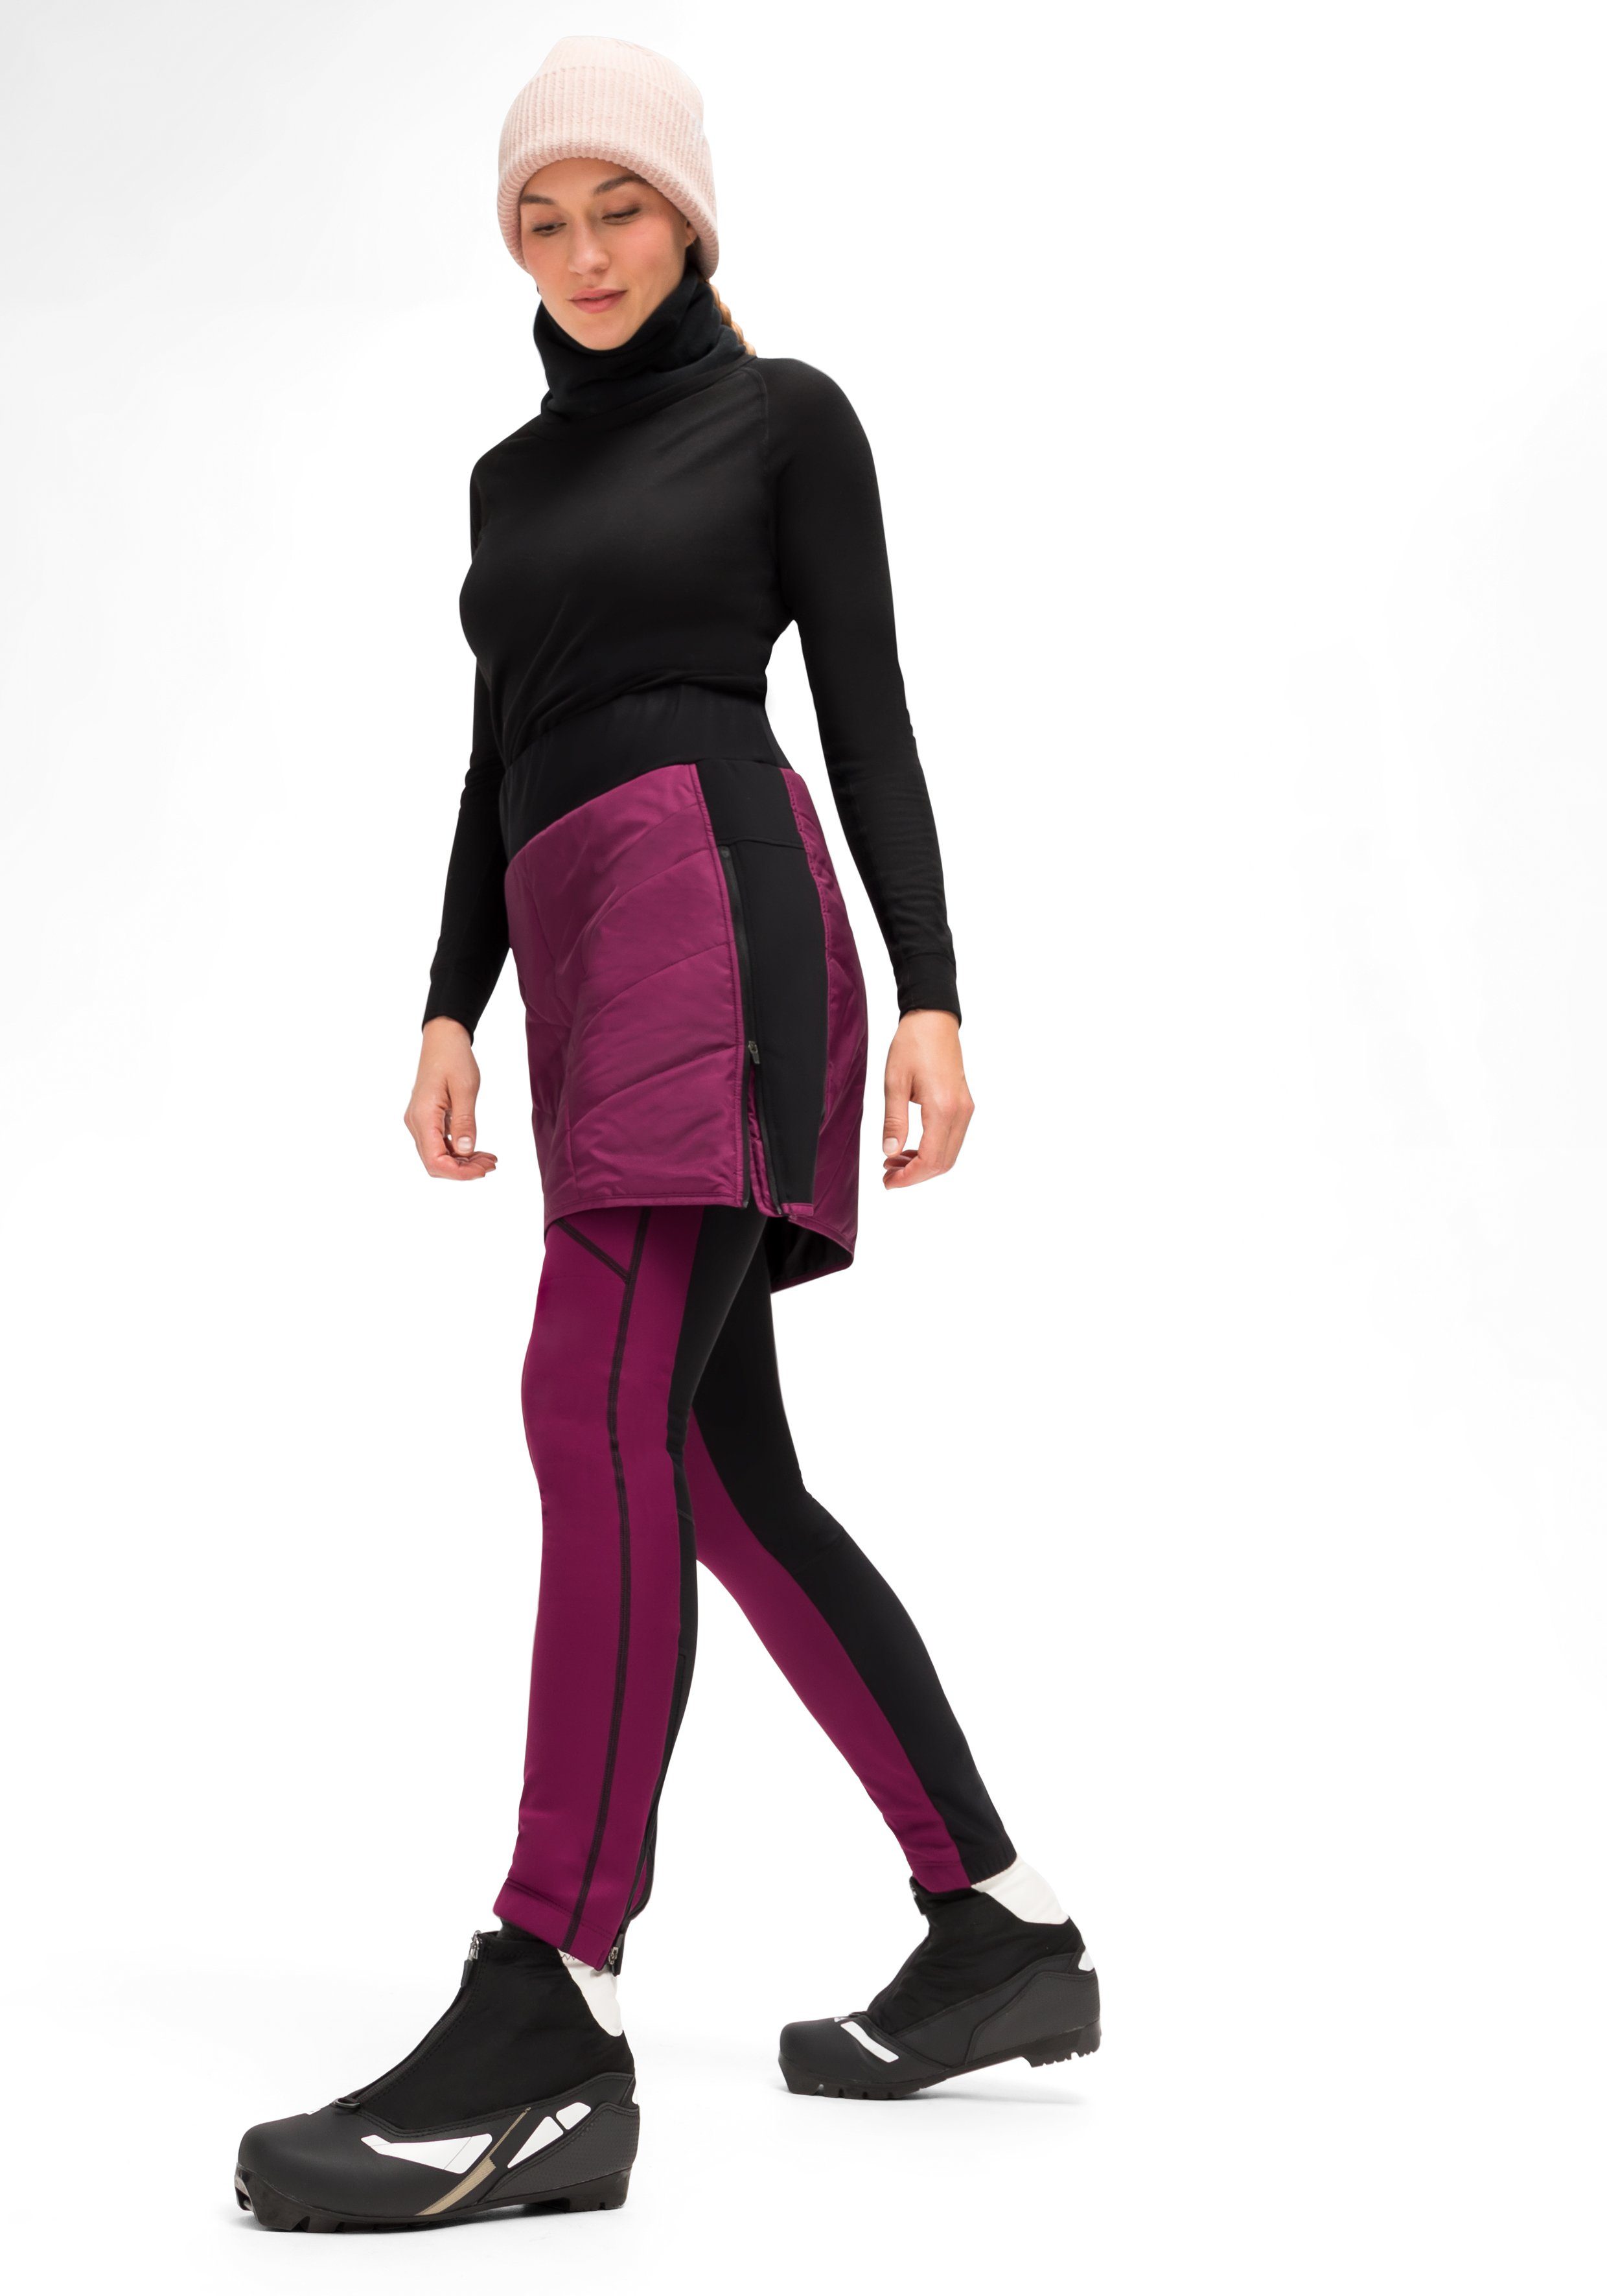 Überrock, magenta und elastischer Sweatrock Damen Maier atmungsaktiv W windabweisend, Sports Skjoma Bund Skirt